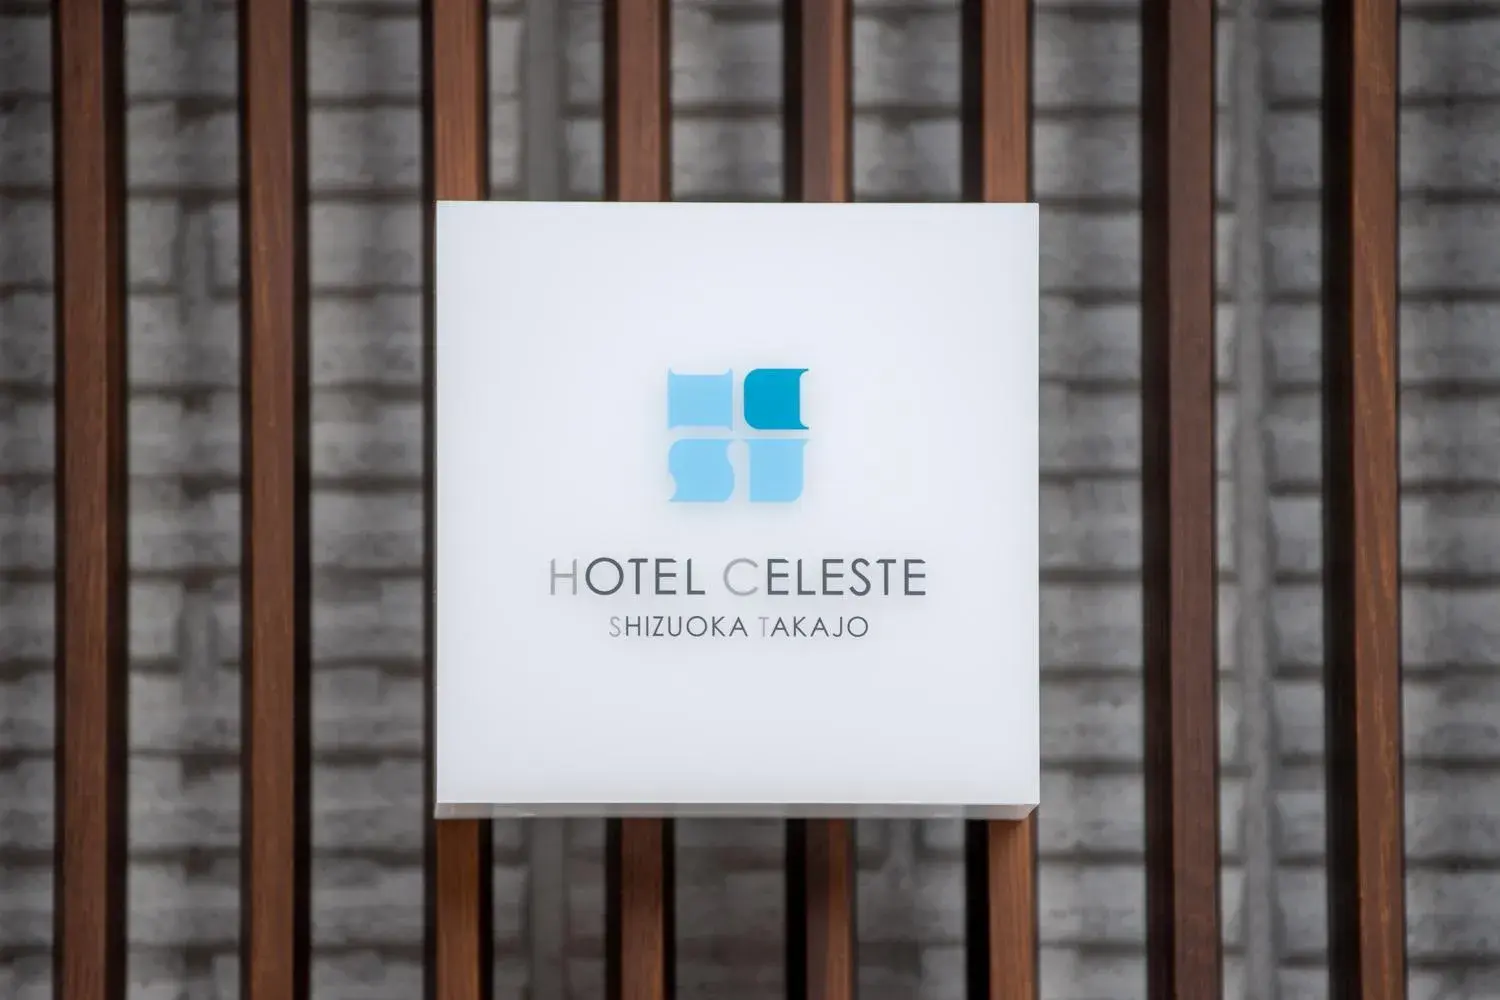 Property logo or sign in Hotel Celeste Shizuoka